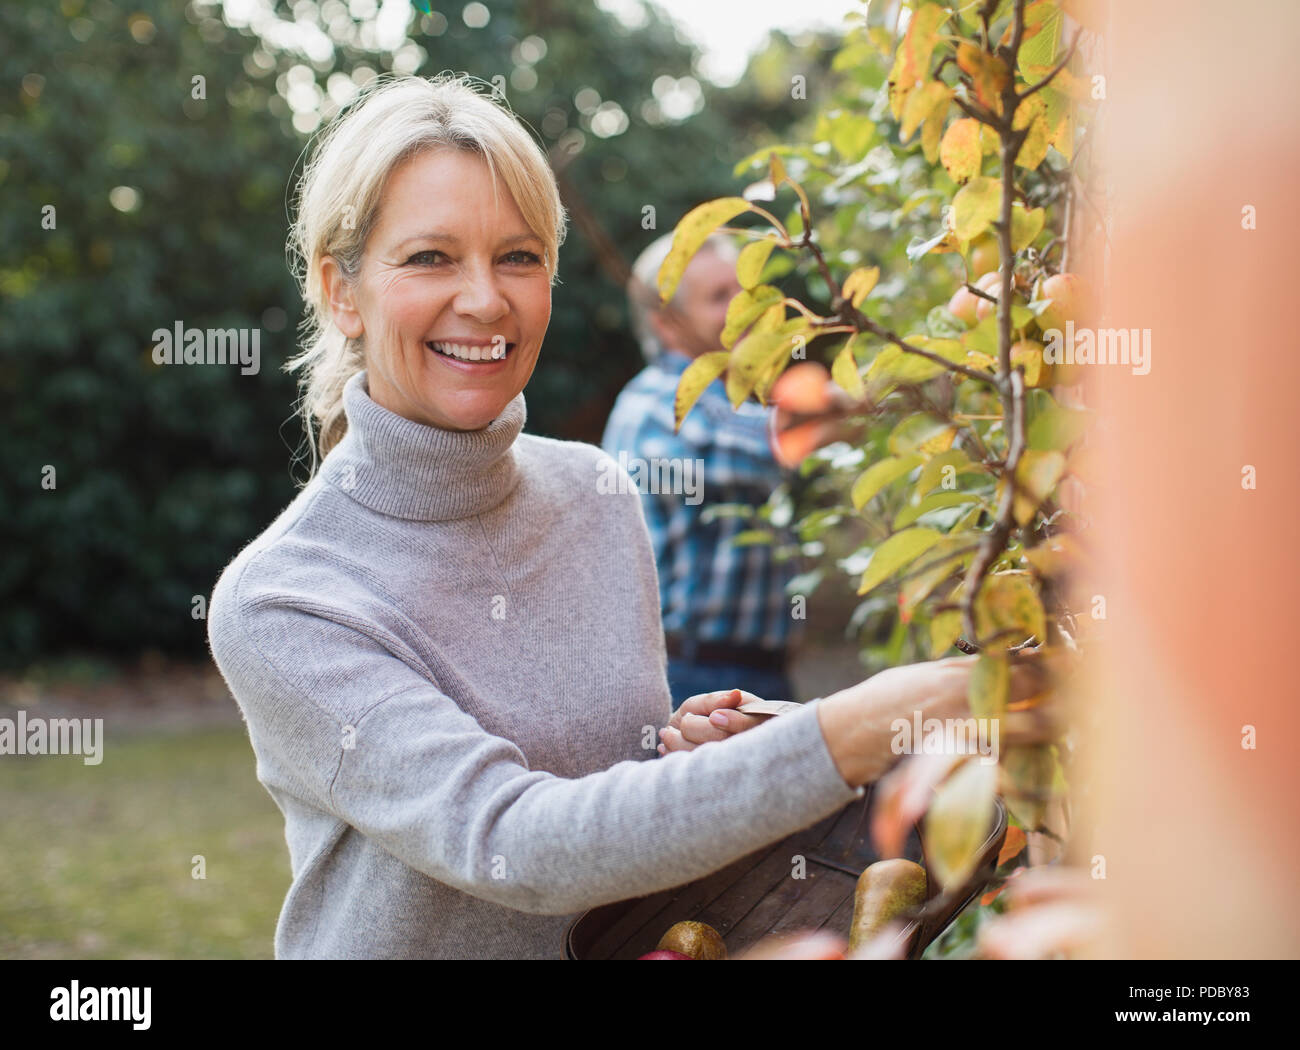 Portrait souriant, confiant mature woman harvesting apples in garden Banque D'Images